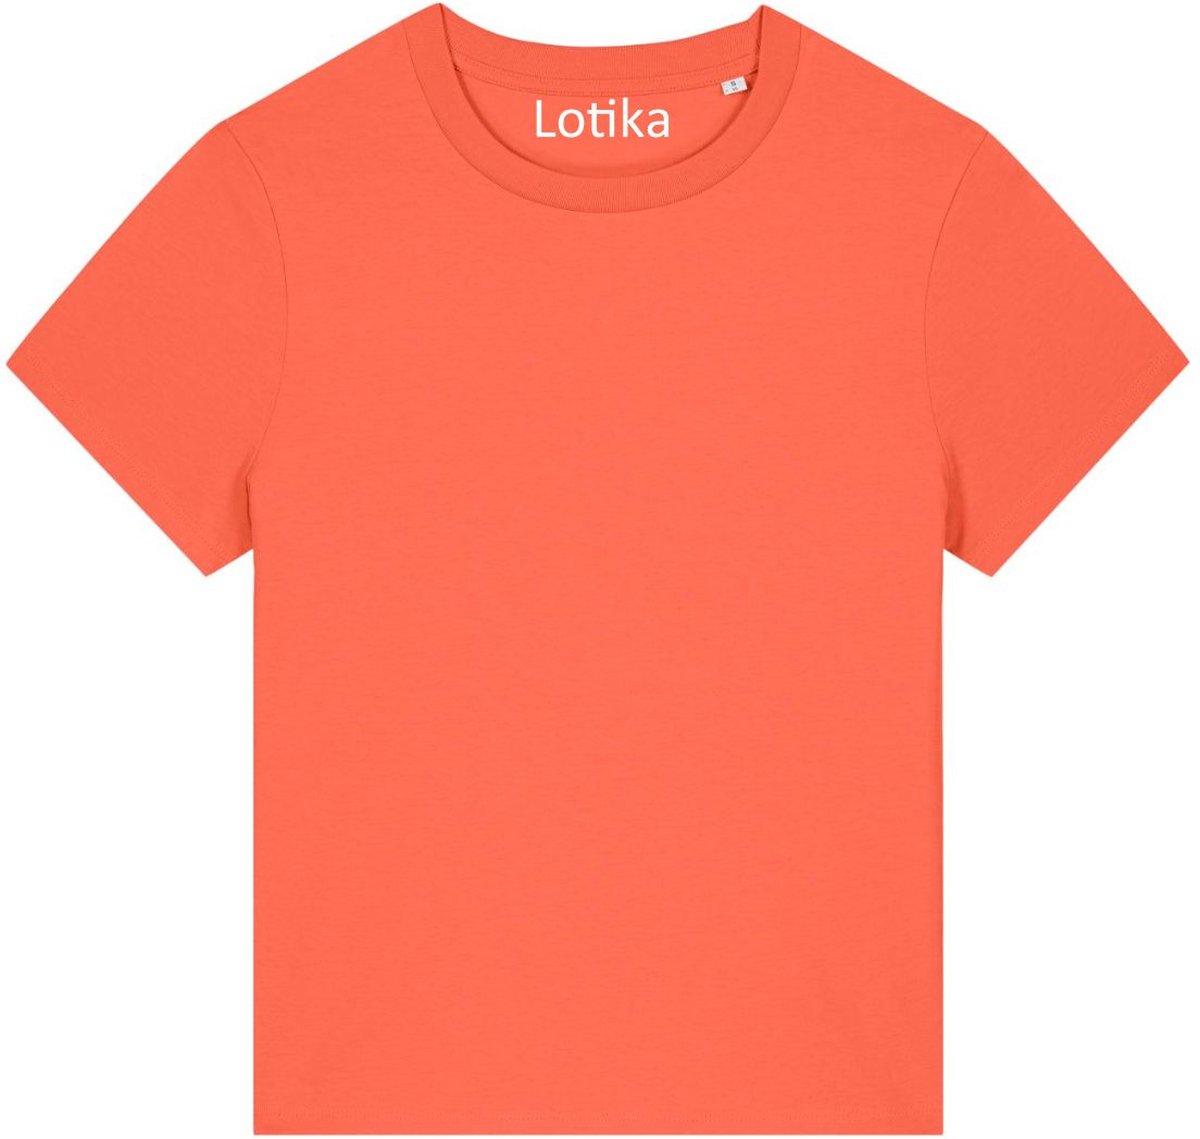 Lotika - Saar T-shirt dames biologisch katoen - fiesta